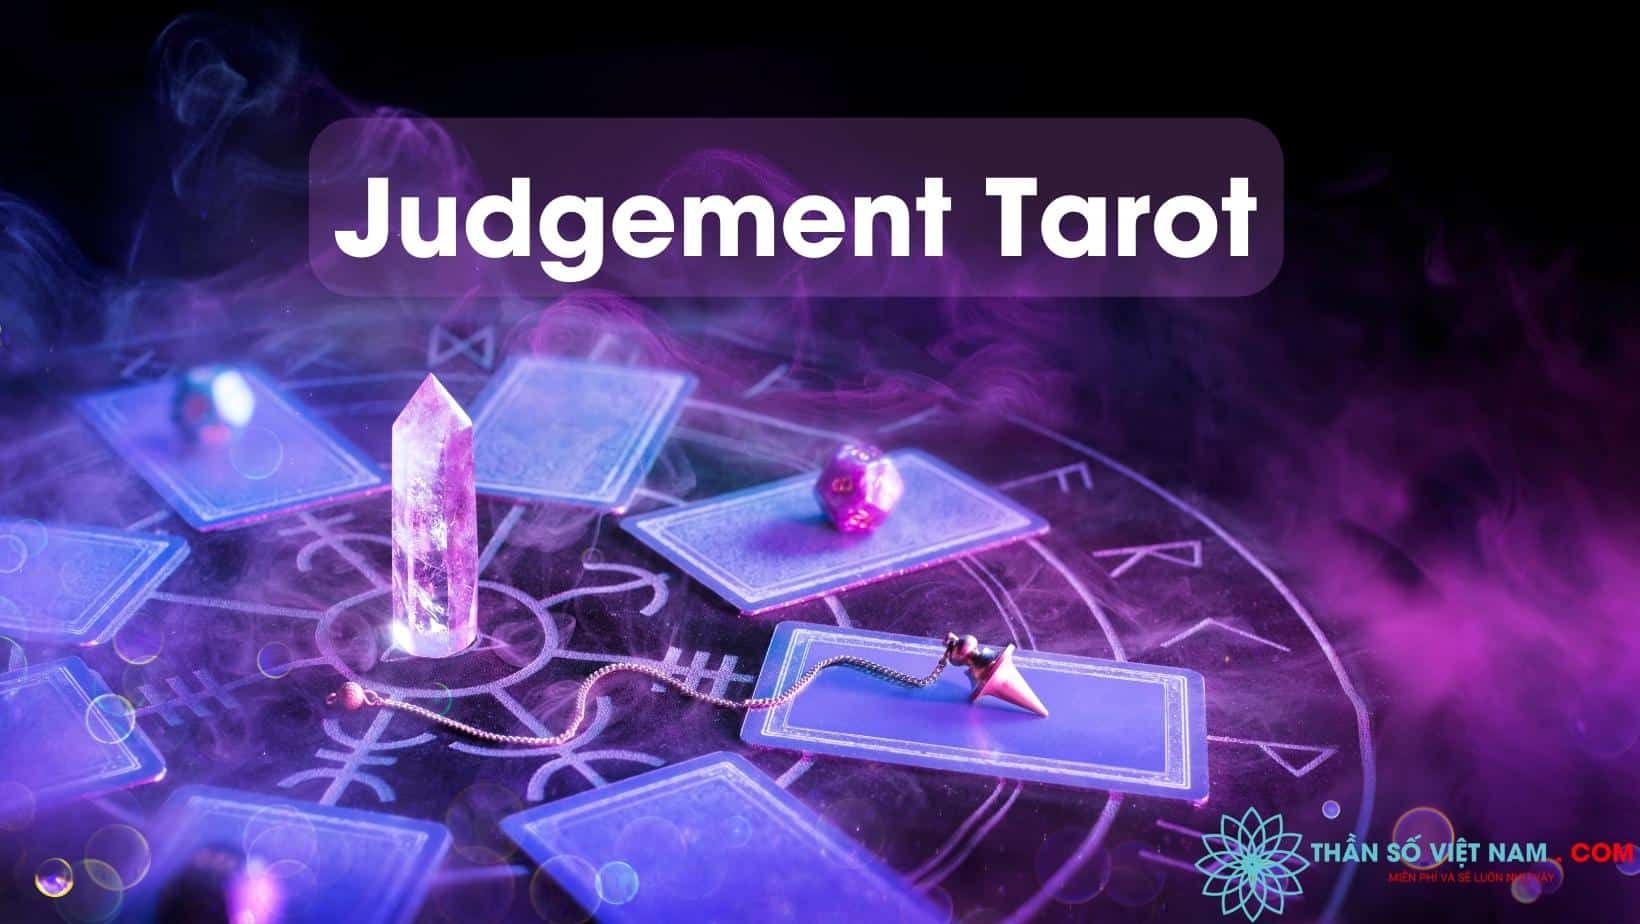 Hãy khám phá bí mật được ẩn giấu trong lá bài Tarot để tìm ra câu trả lời cho những thắc mắc của bạn. Hình ảnh liên quan sẽ khiến bạn đắm chìm trong thế giới tuyệt vời của Tarot.